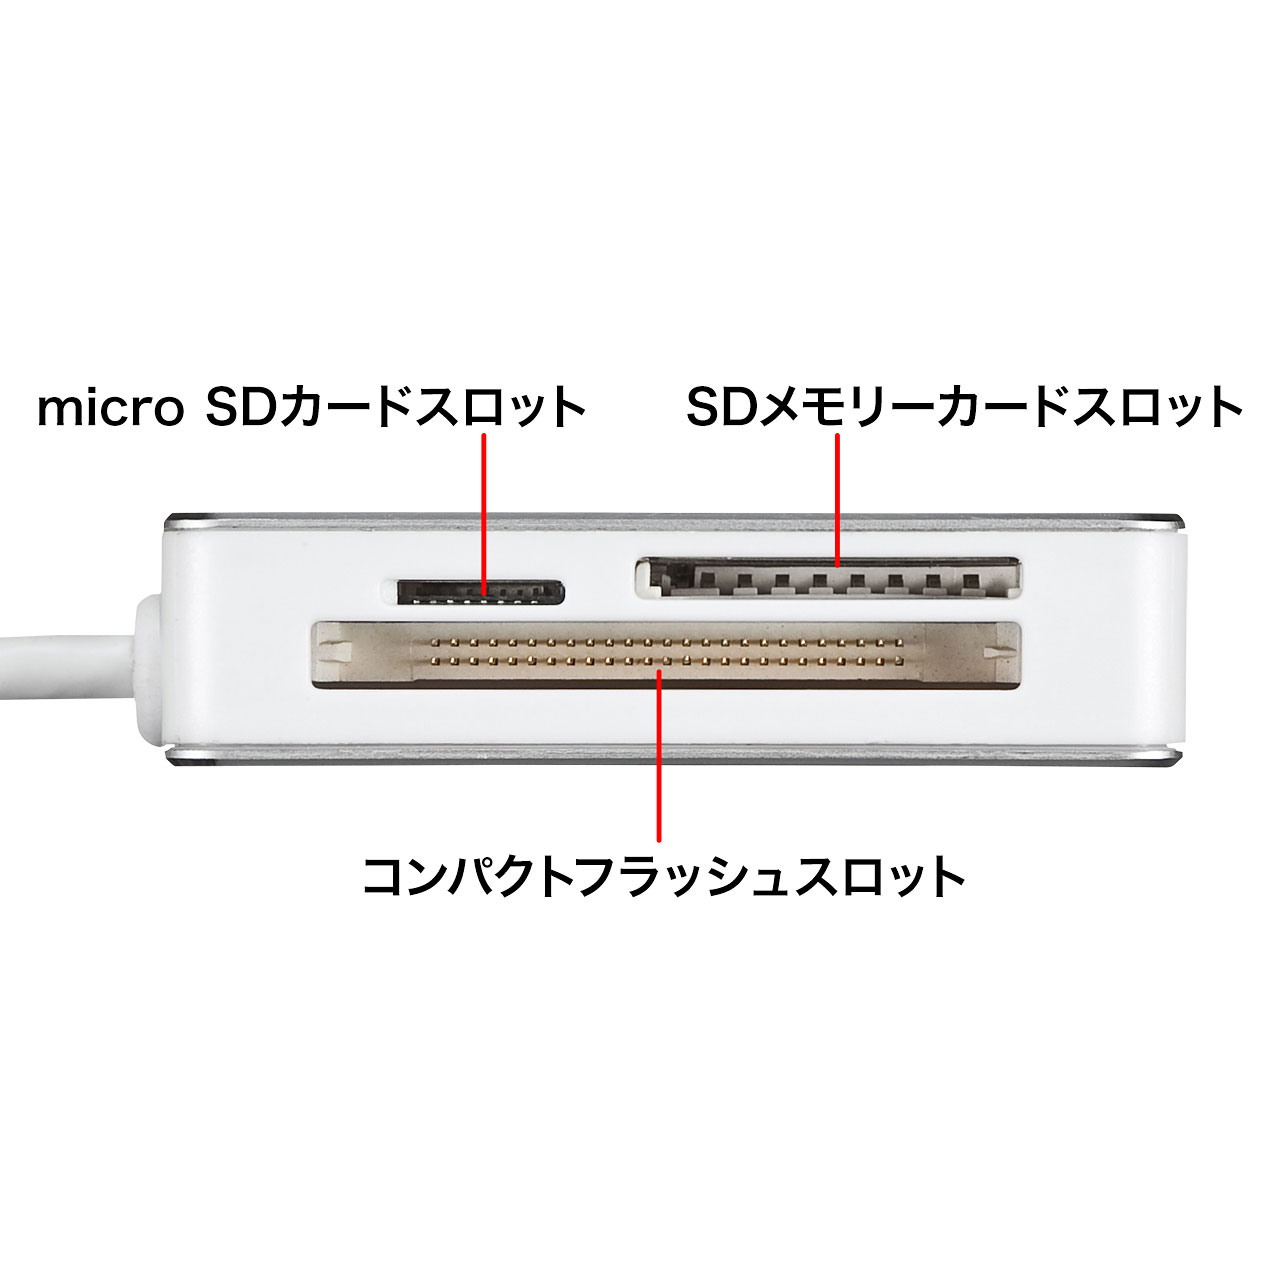 USB Type-C専用 カードリーダー